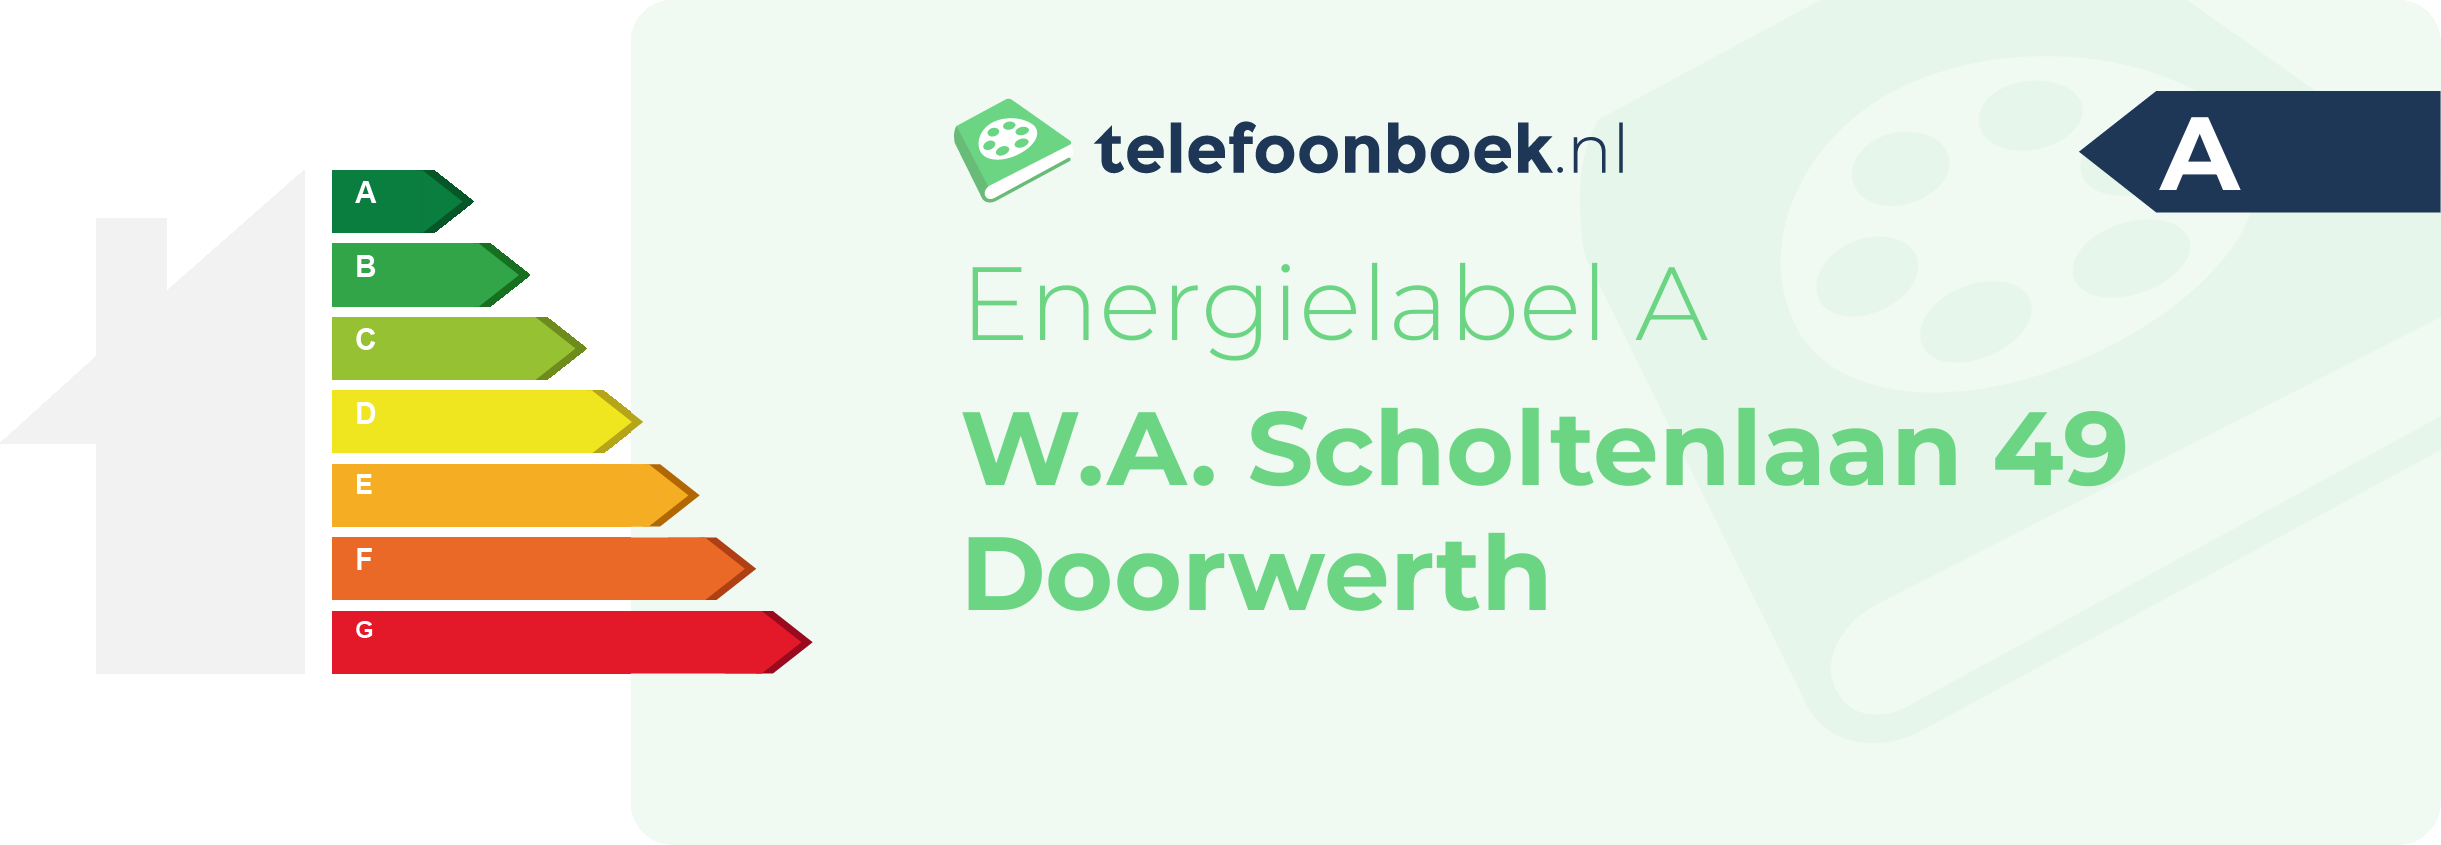 Energielabel W.A. Scholtenlaan 49 Doorwerth